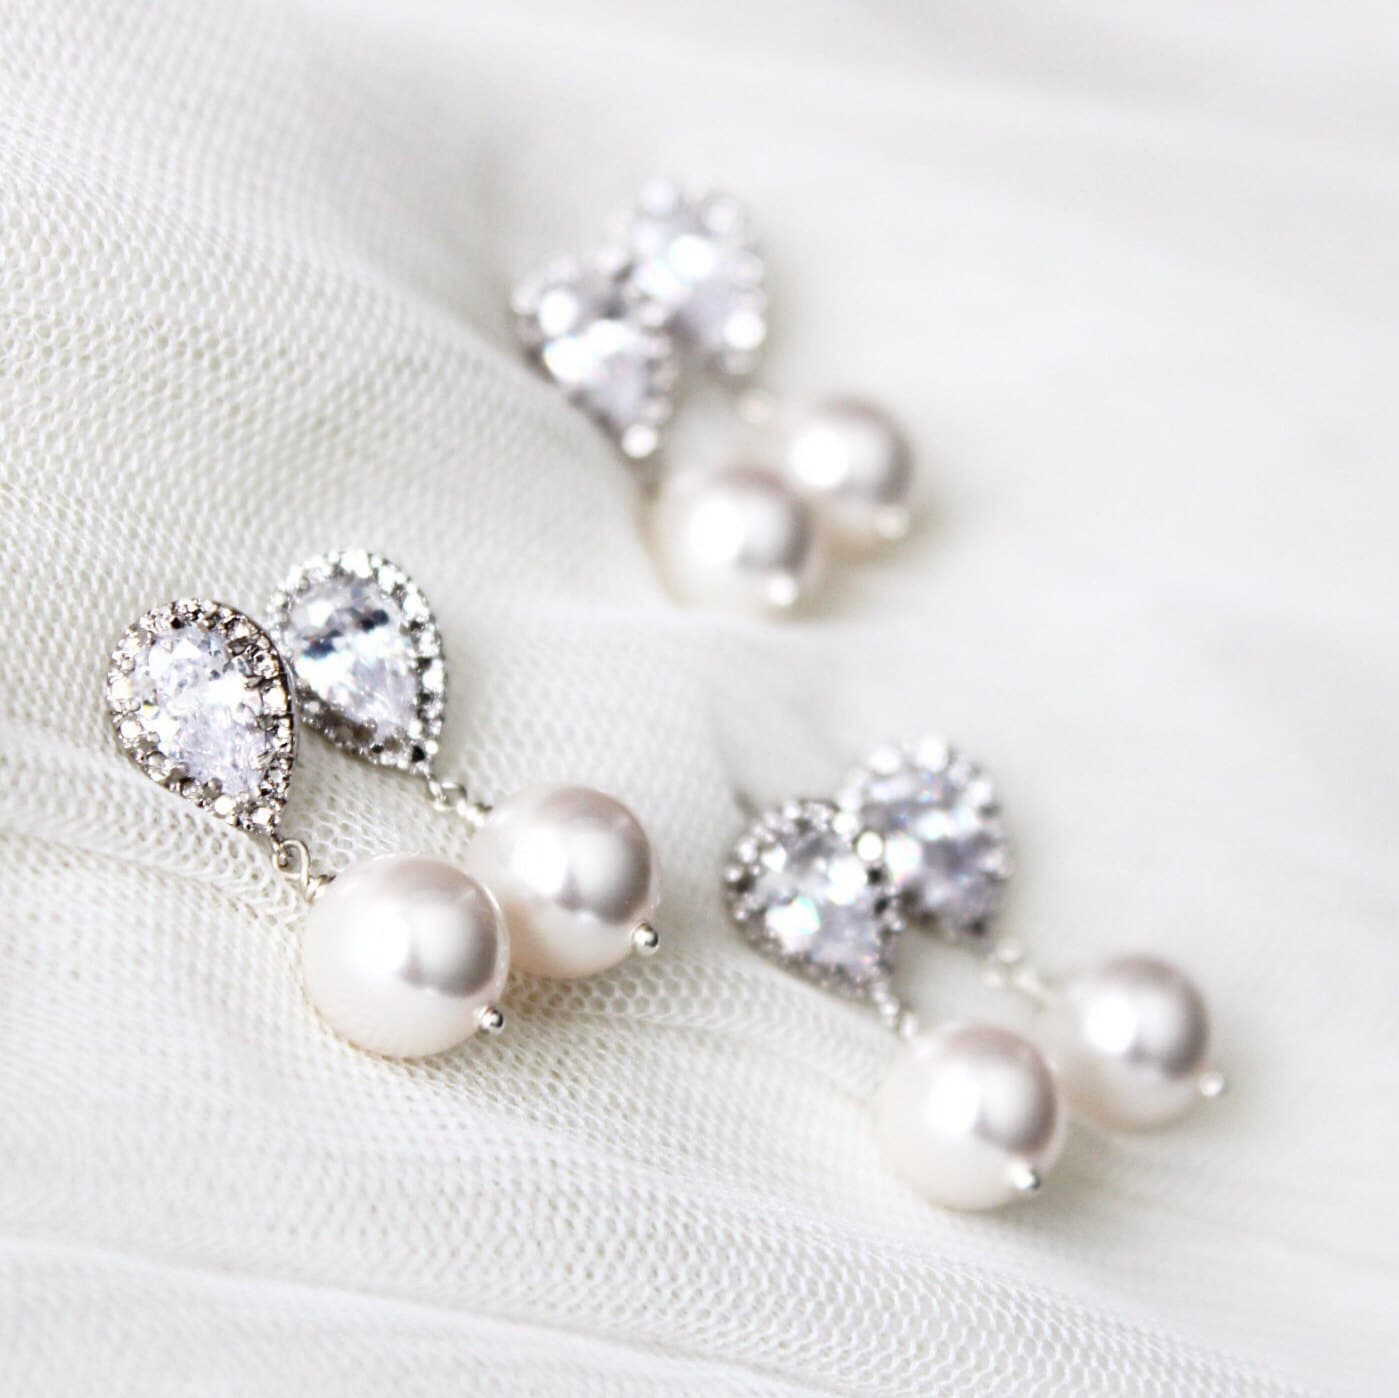 white pearls filigree earrings vintage inspired Bridesmaid earrings set of 3 three pearl earrings bridesmaid gift, sterling silver